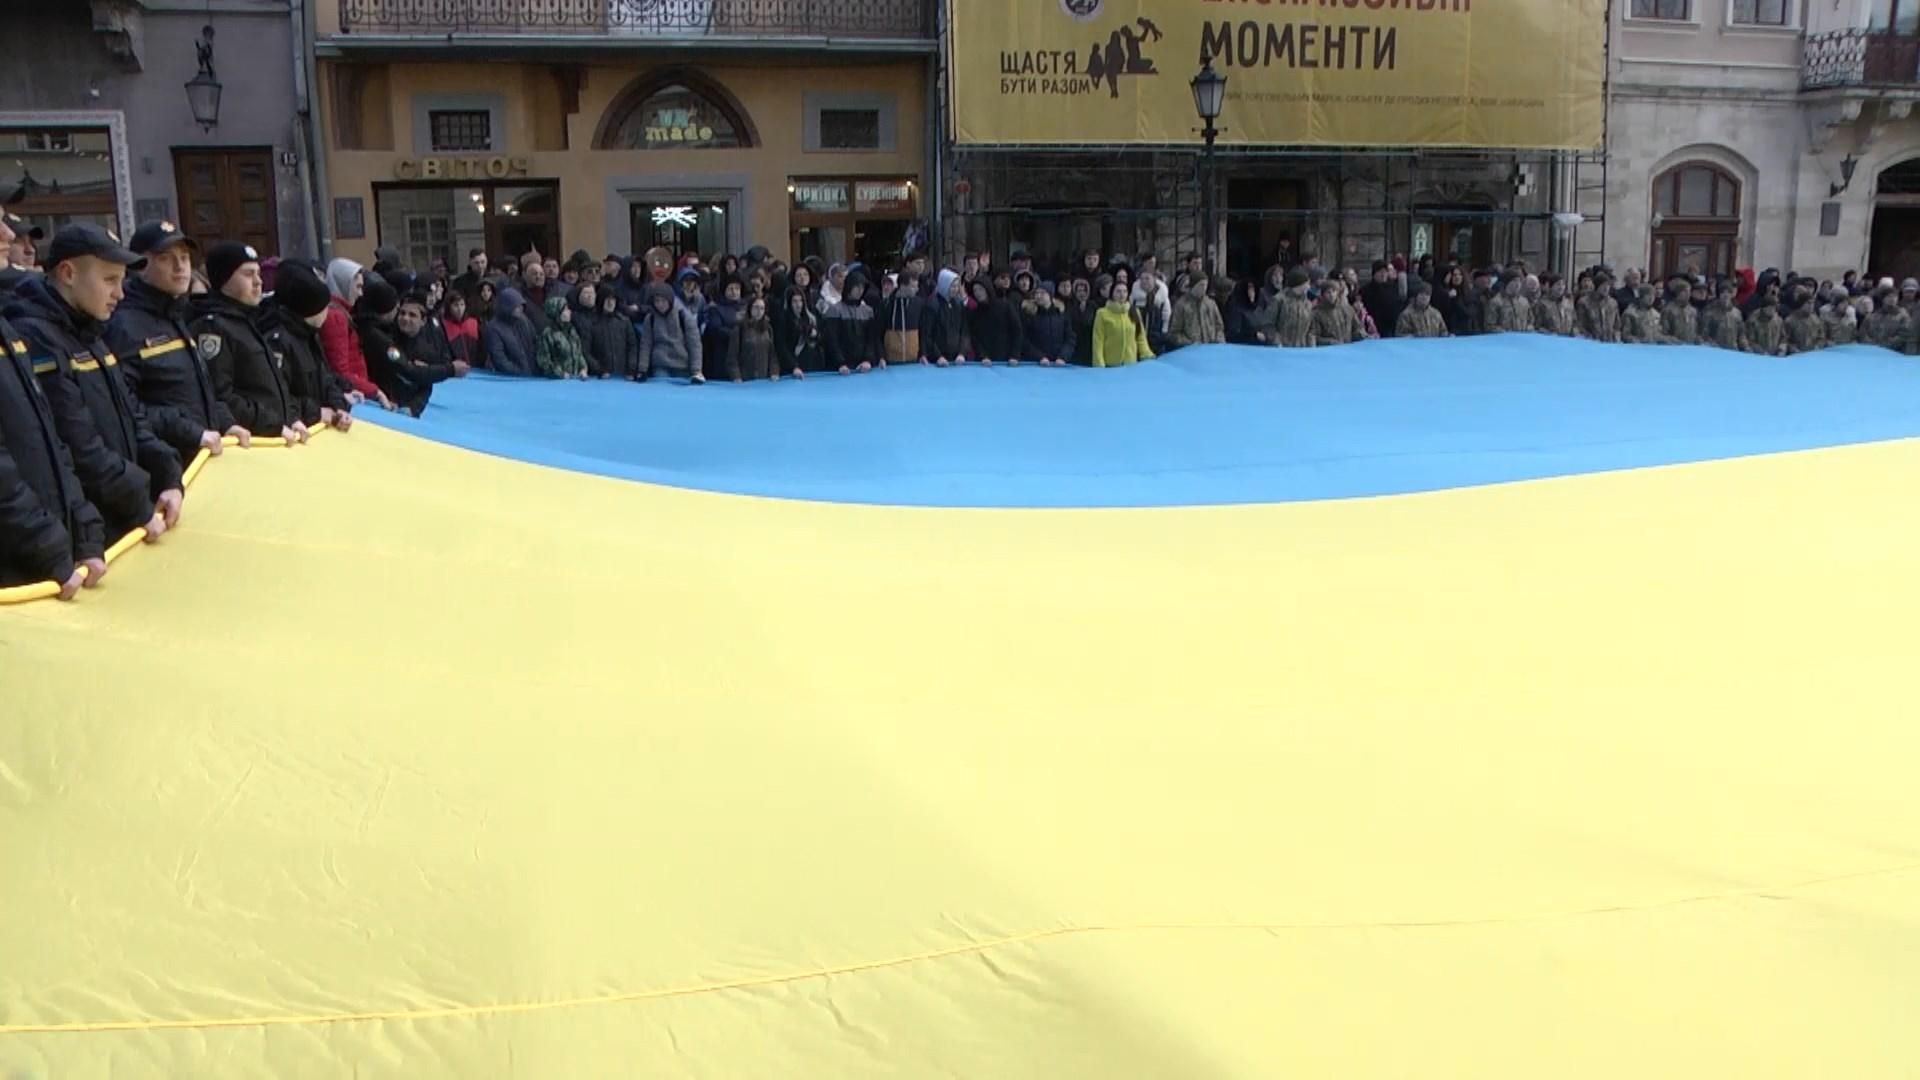 Во Львове сотни людей одновременно спели гимн Украины: увлекательное видео